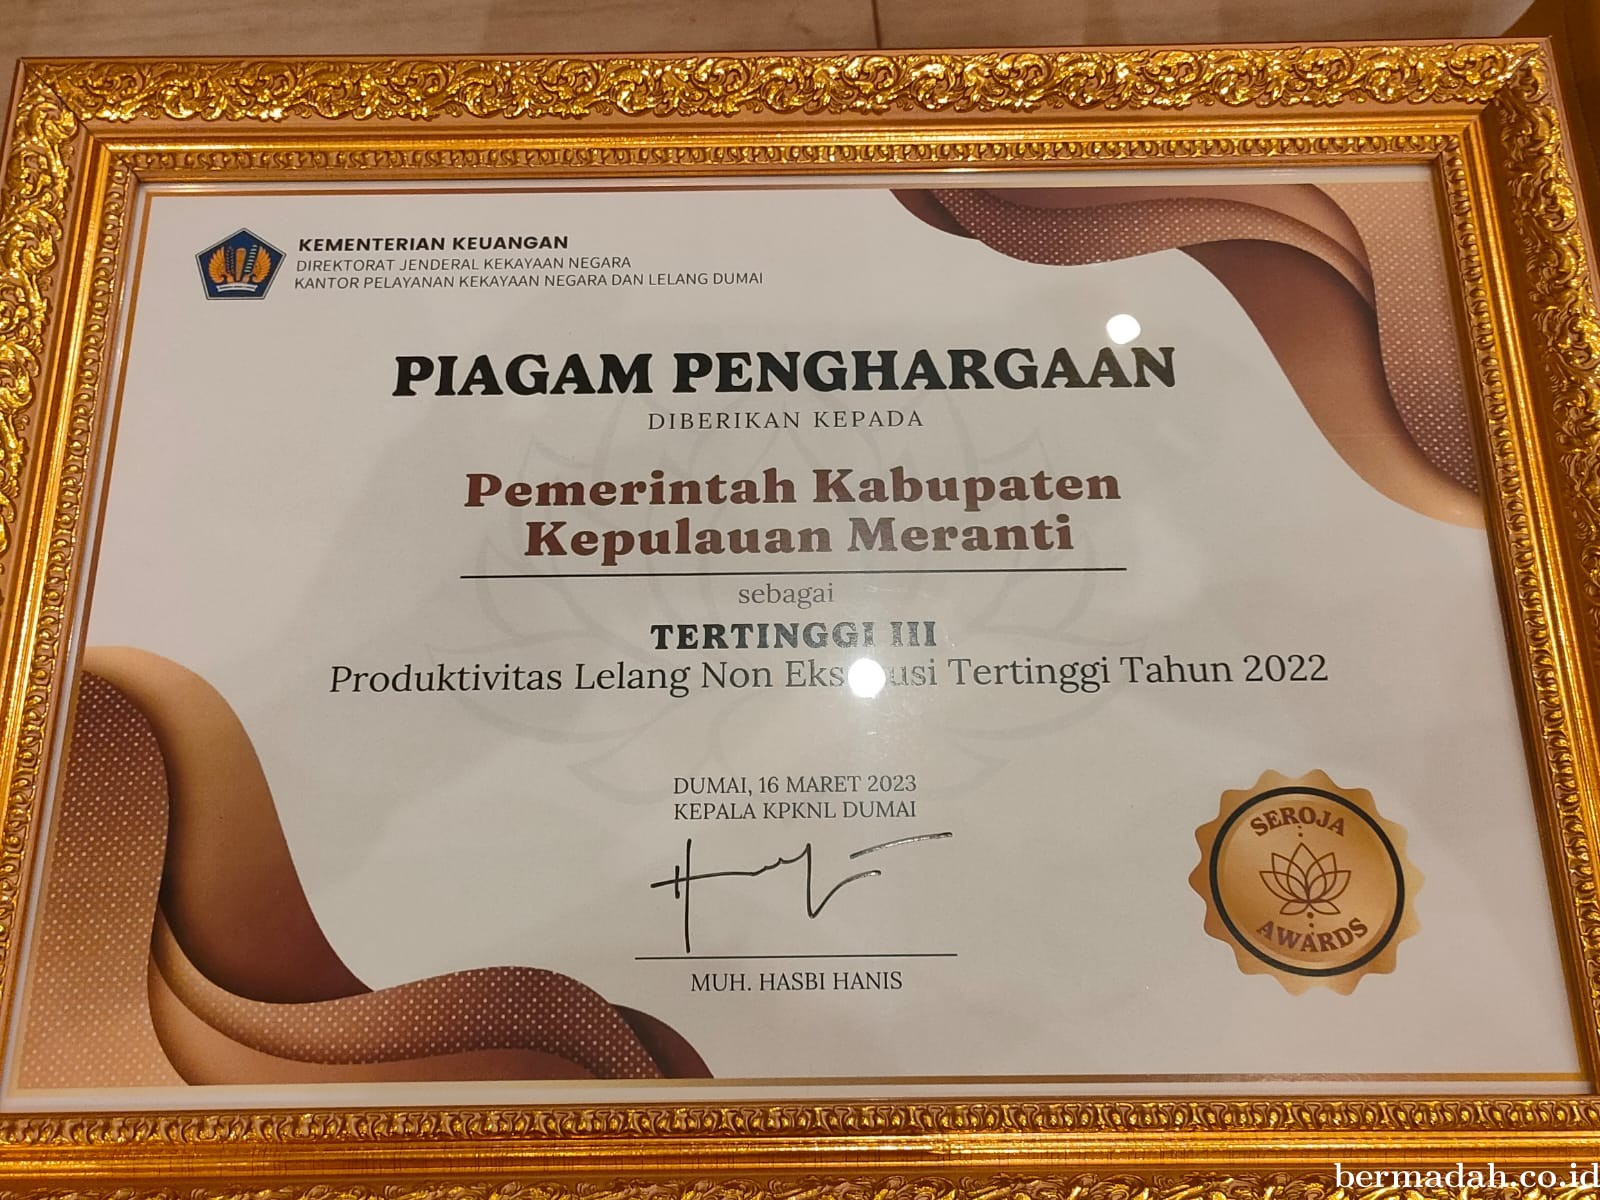 Meranti Terima Dua Penghargaan Seroja Award dari KPKNL Dumai